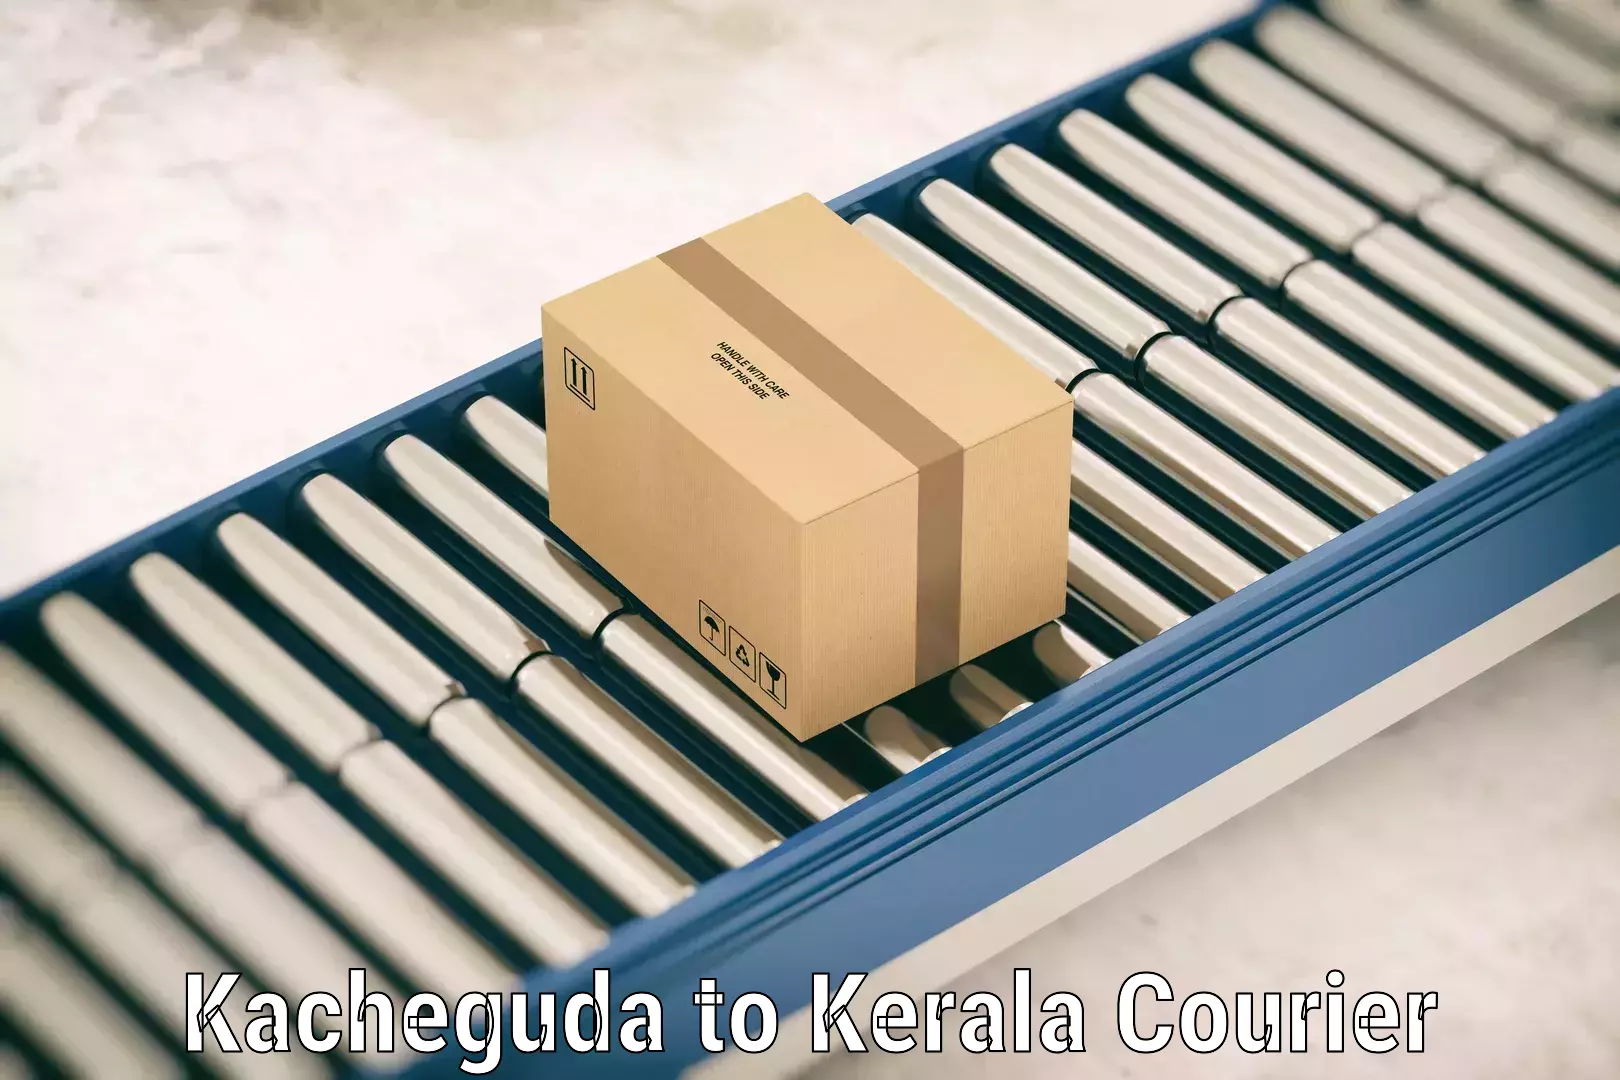 Personal effects shipping in Kacheguda to Kerala